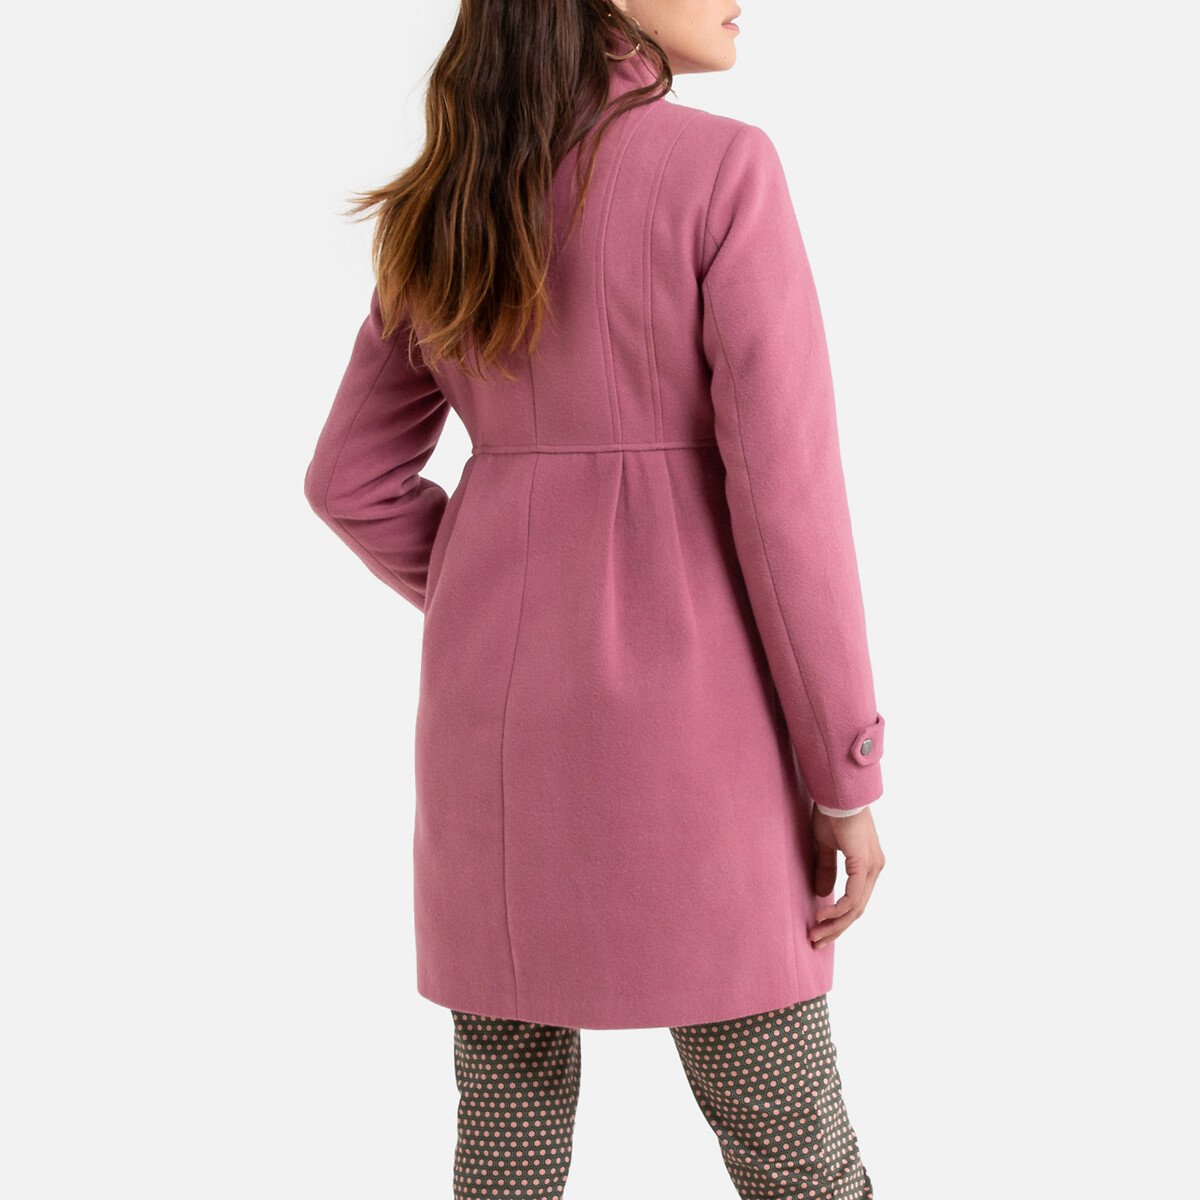 Пальто La Redoute Средней длины с застежкой на молнию 38 (FR) - 44 (RUS) розовый, размер 38 (FR) - 44 (RUS) Средней длины с застежкой на молнию 38 (FR) - 44 (RUS) розовый - фото 4